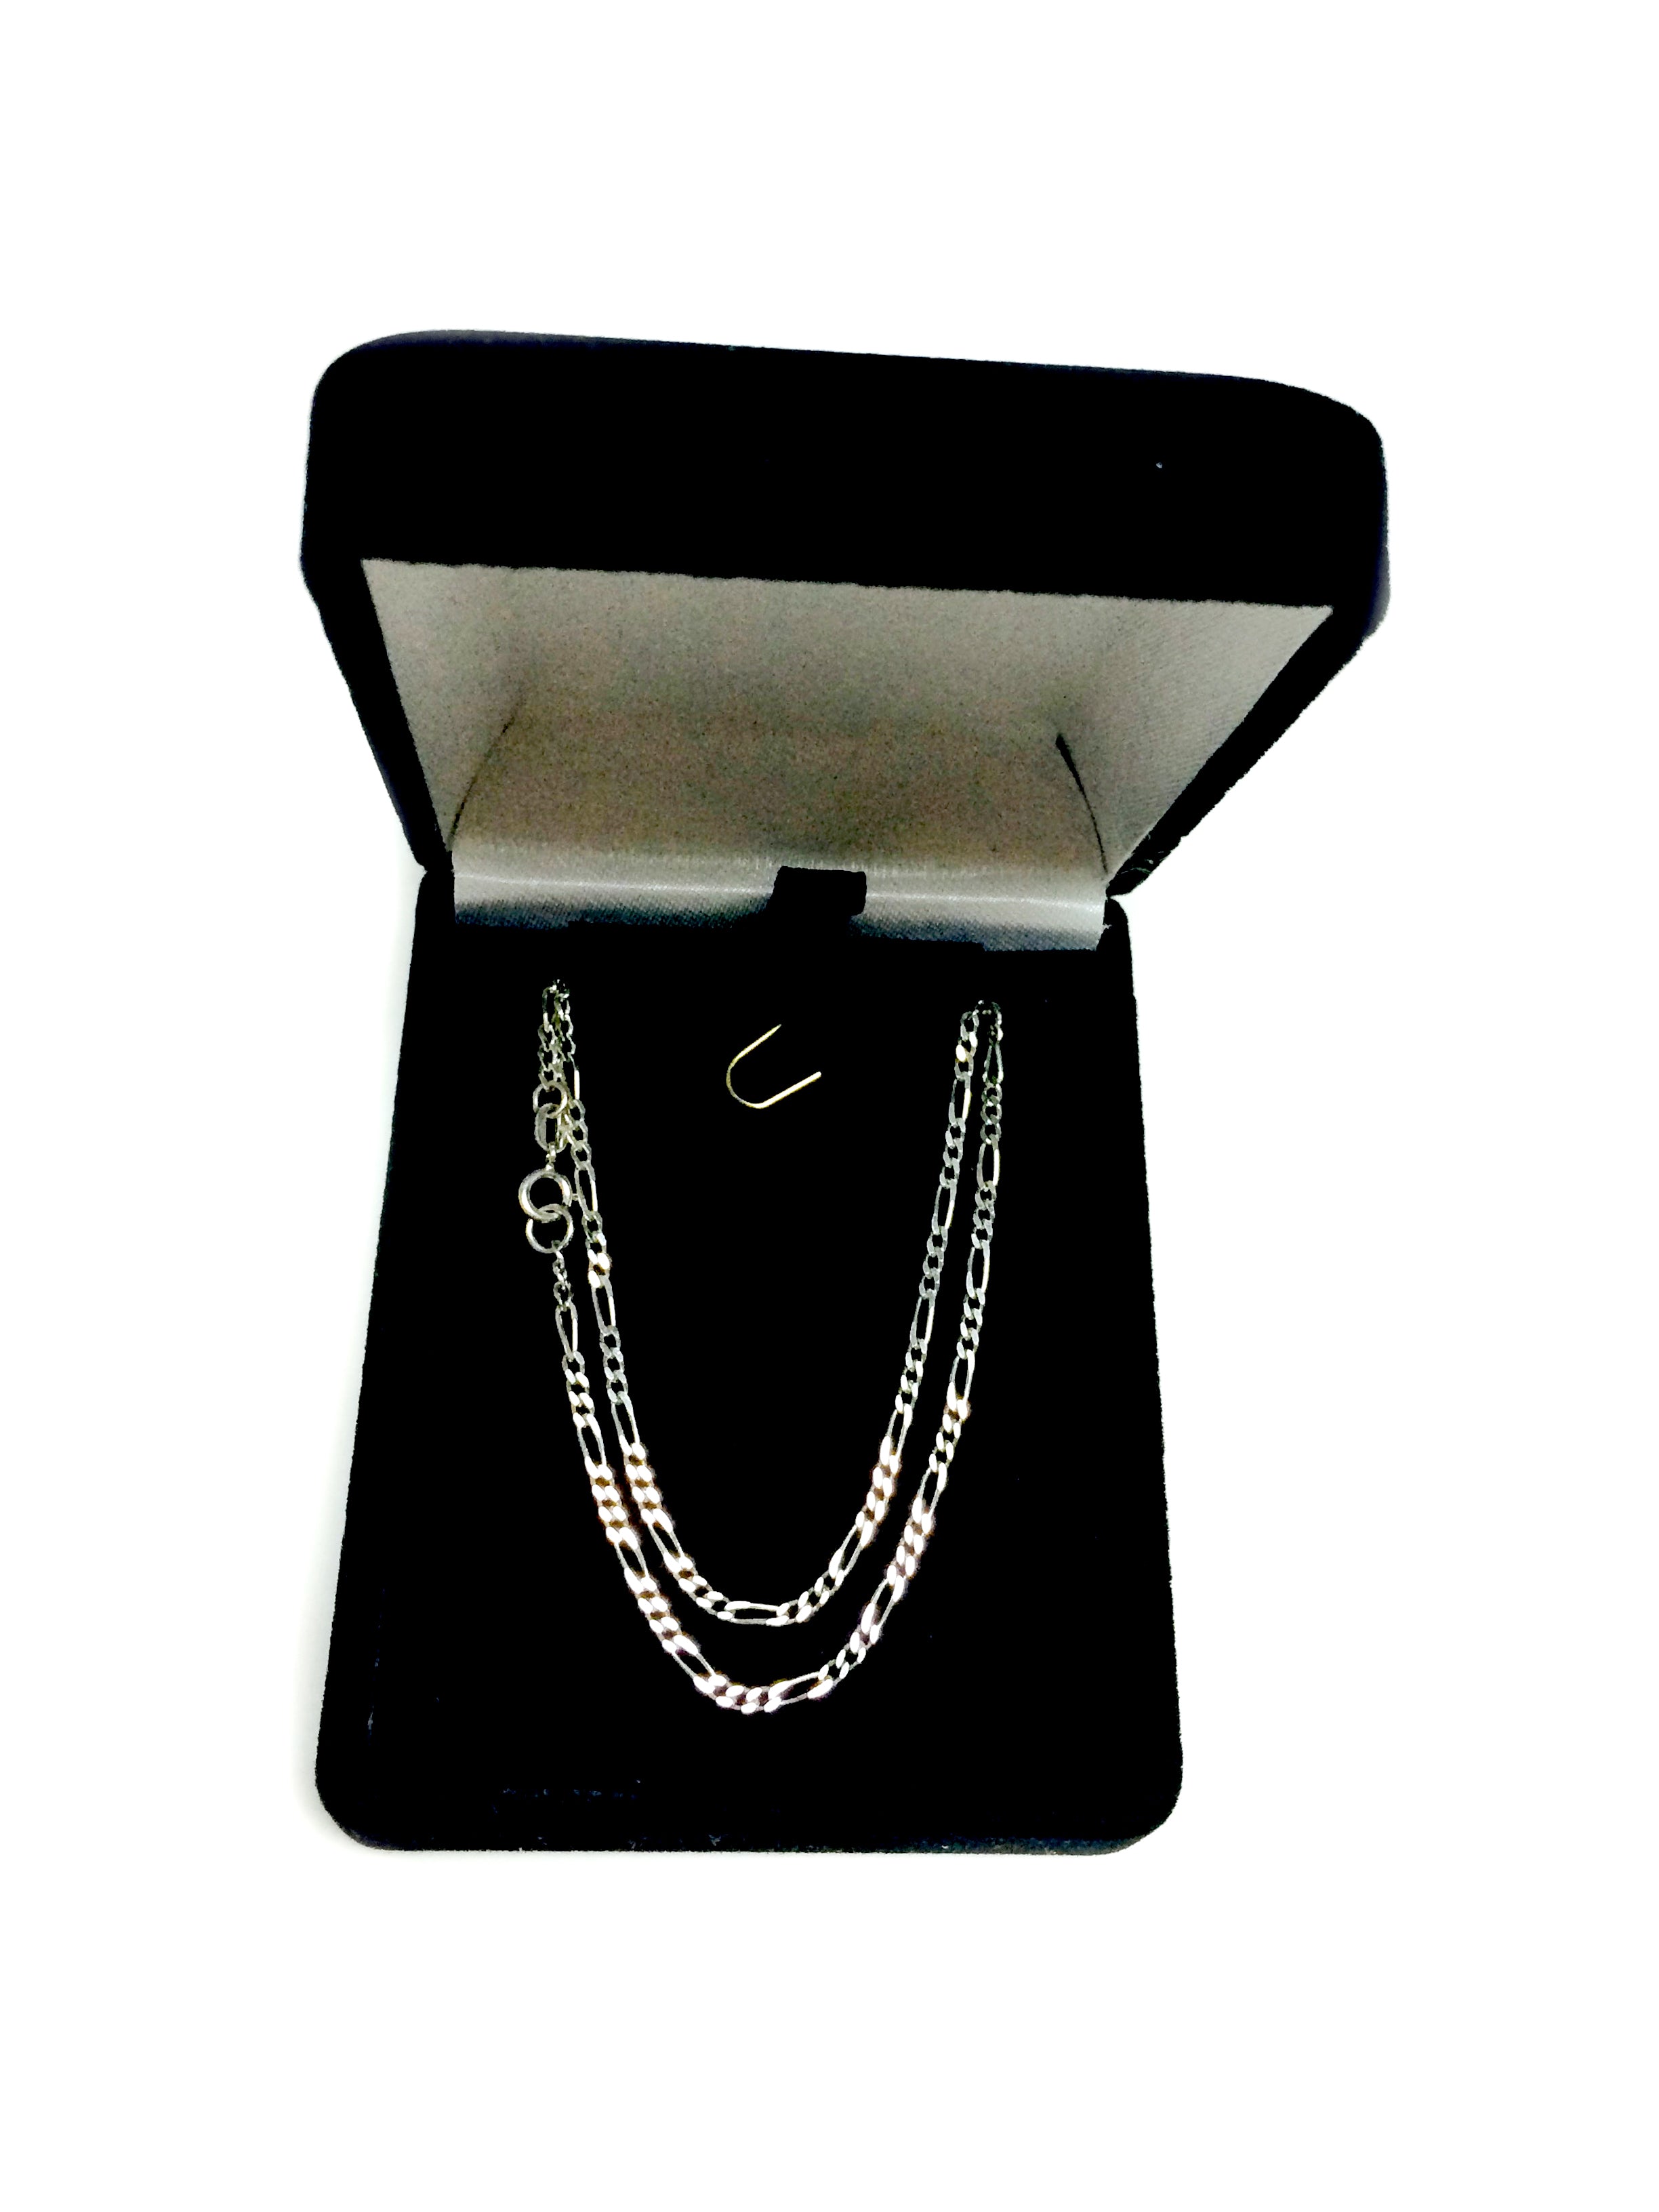 14k hvid massivt guld Figaro kæde halskæde, 1,9 mm fine designer smykker til mænd og kvinder